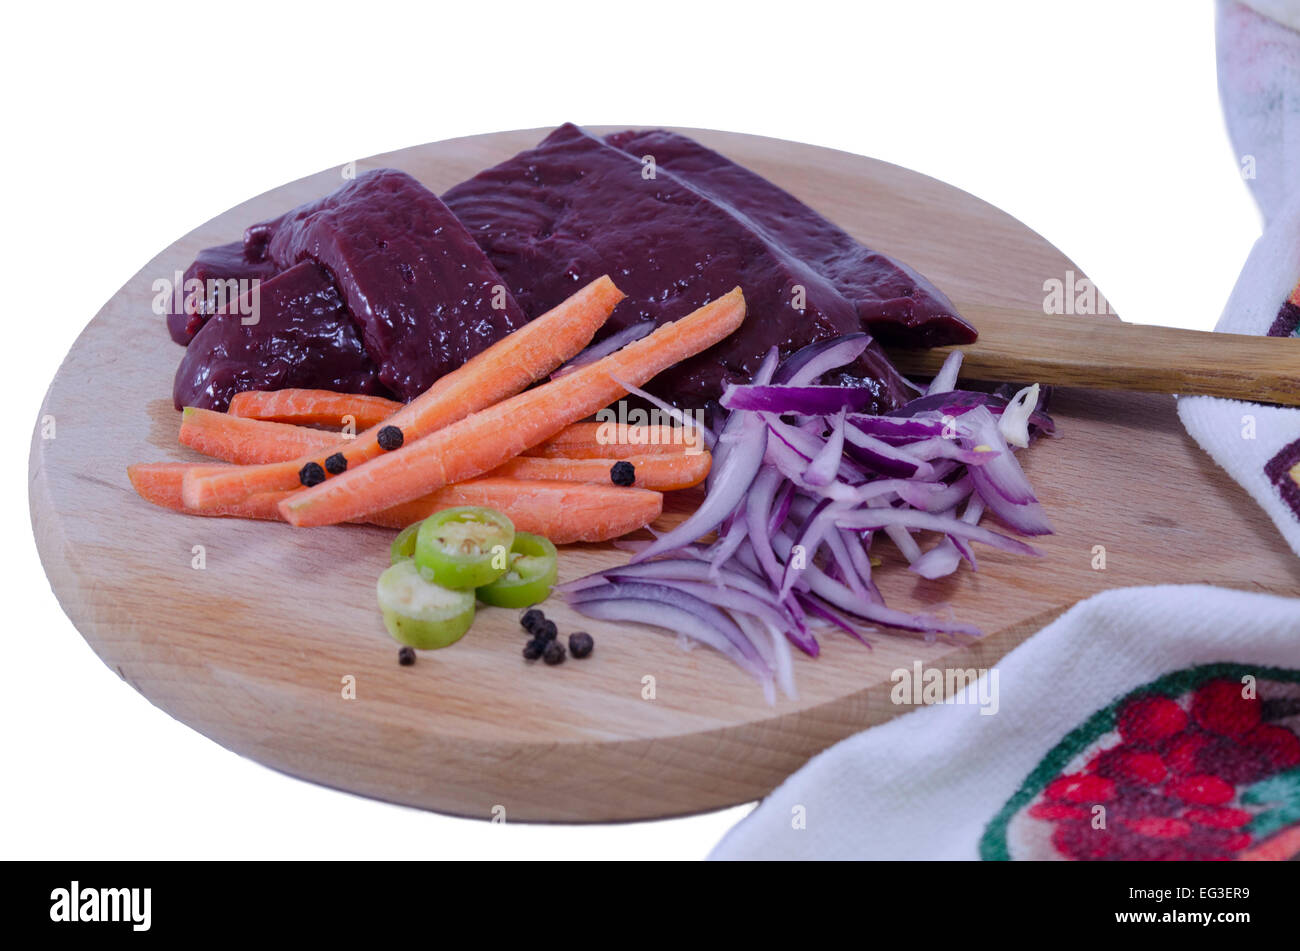 Hígado fresco, zanahorias, cebollas y pimentón sobre una tabla para cortar aislado sobre fondo blanco. Foto de stock